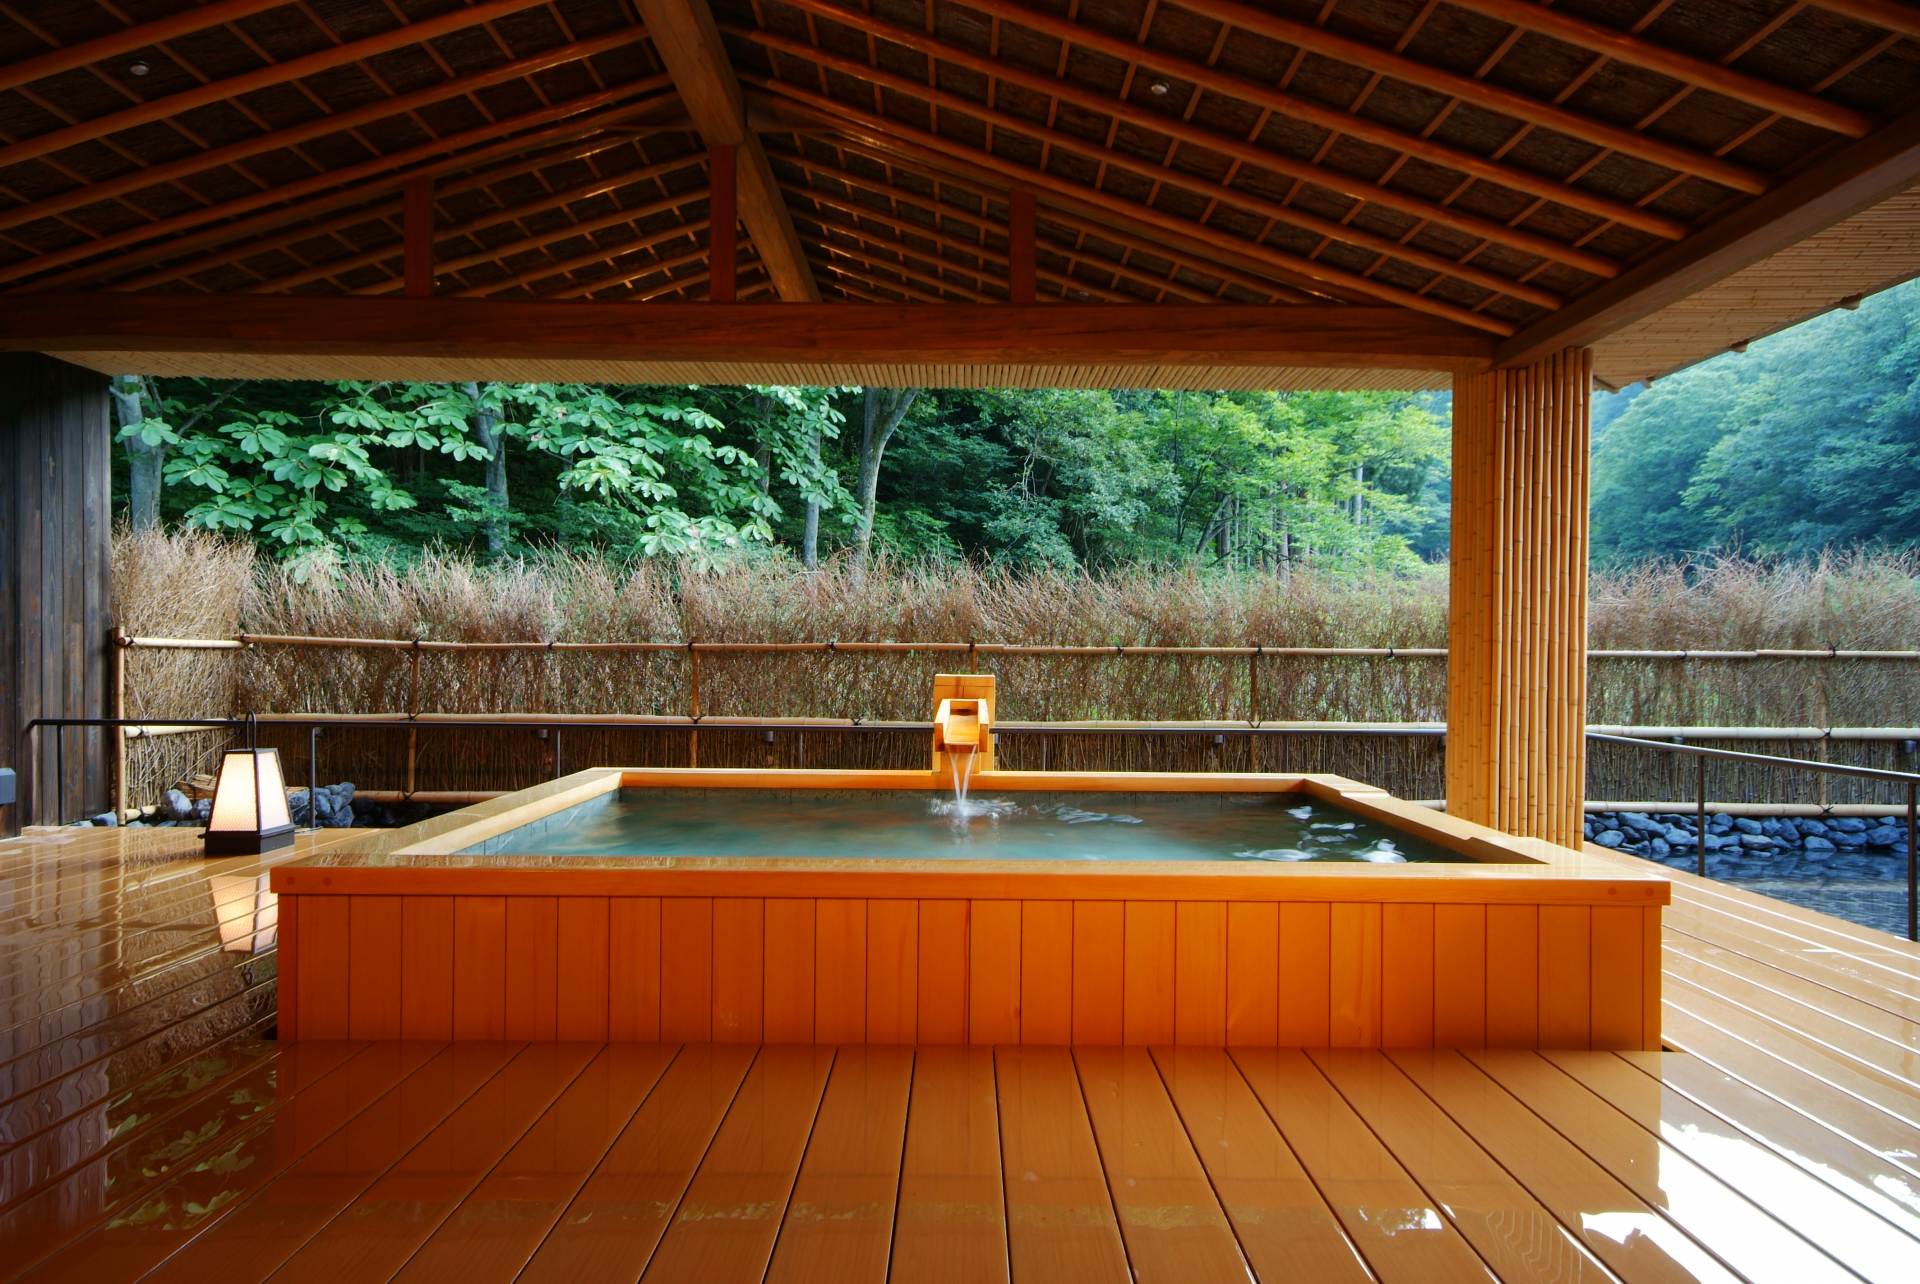 La location de spa privé a la cote. Une chambre coûte 8 800 yens (taxes comprises) pour 70 minutes jusqu'à 4 personnes.